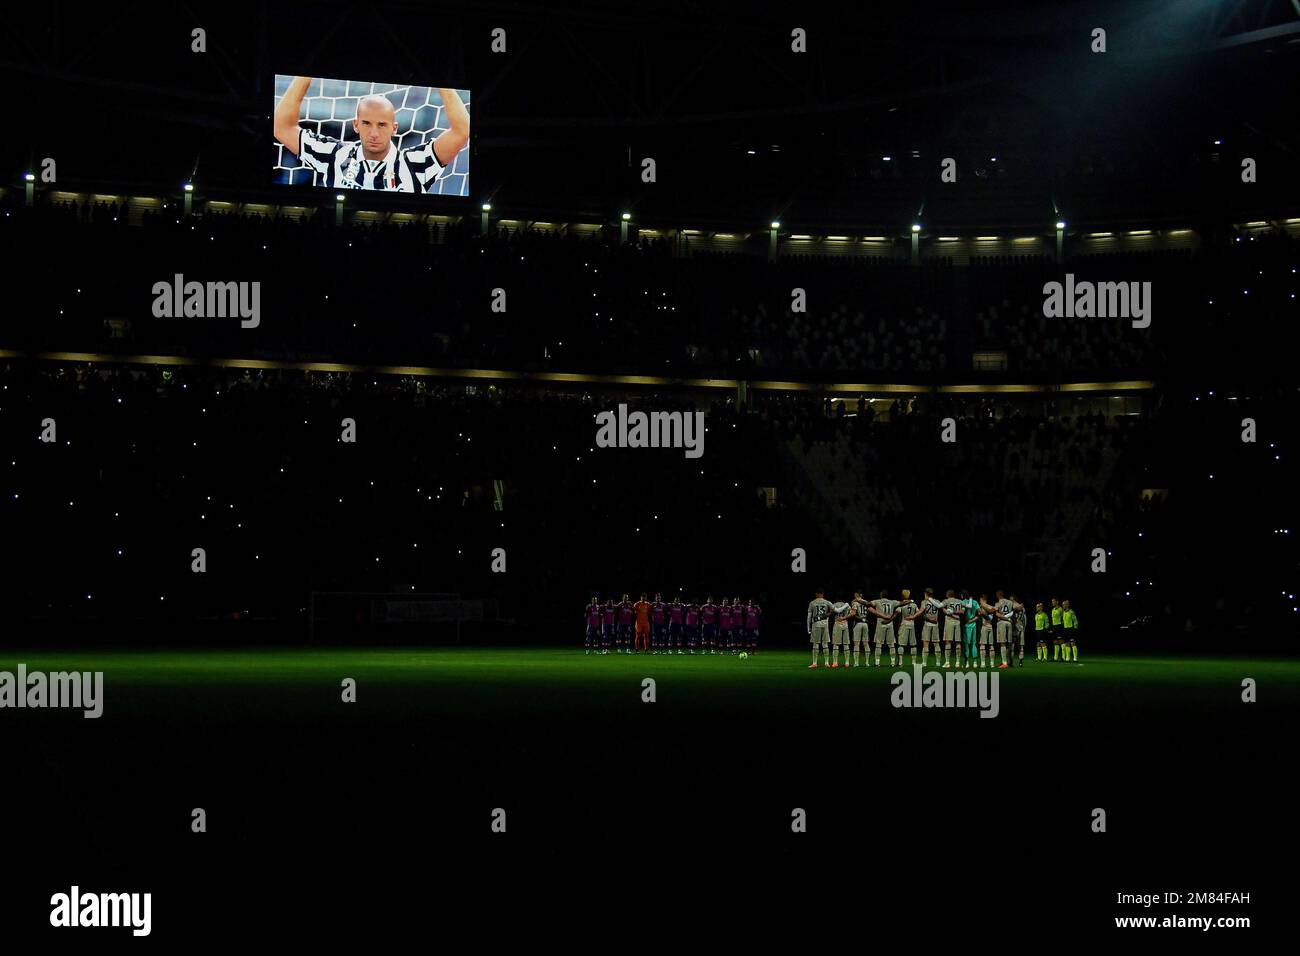 Une image des anciens Crémonais, Juventus, Sampdoria, Chelsea et l'Italie Gianluca Vialli est projecterd sur l'écran du stade comme une minute de silence est lui Banque D'Images